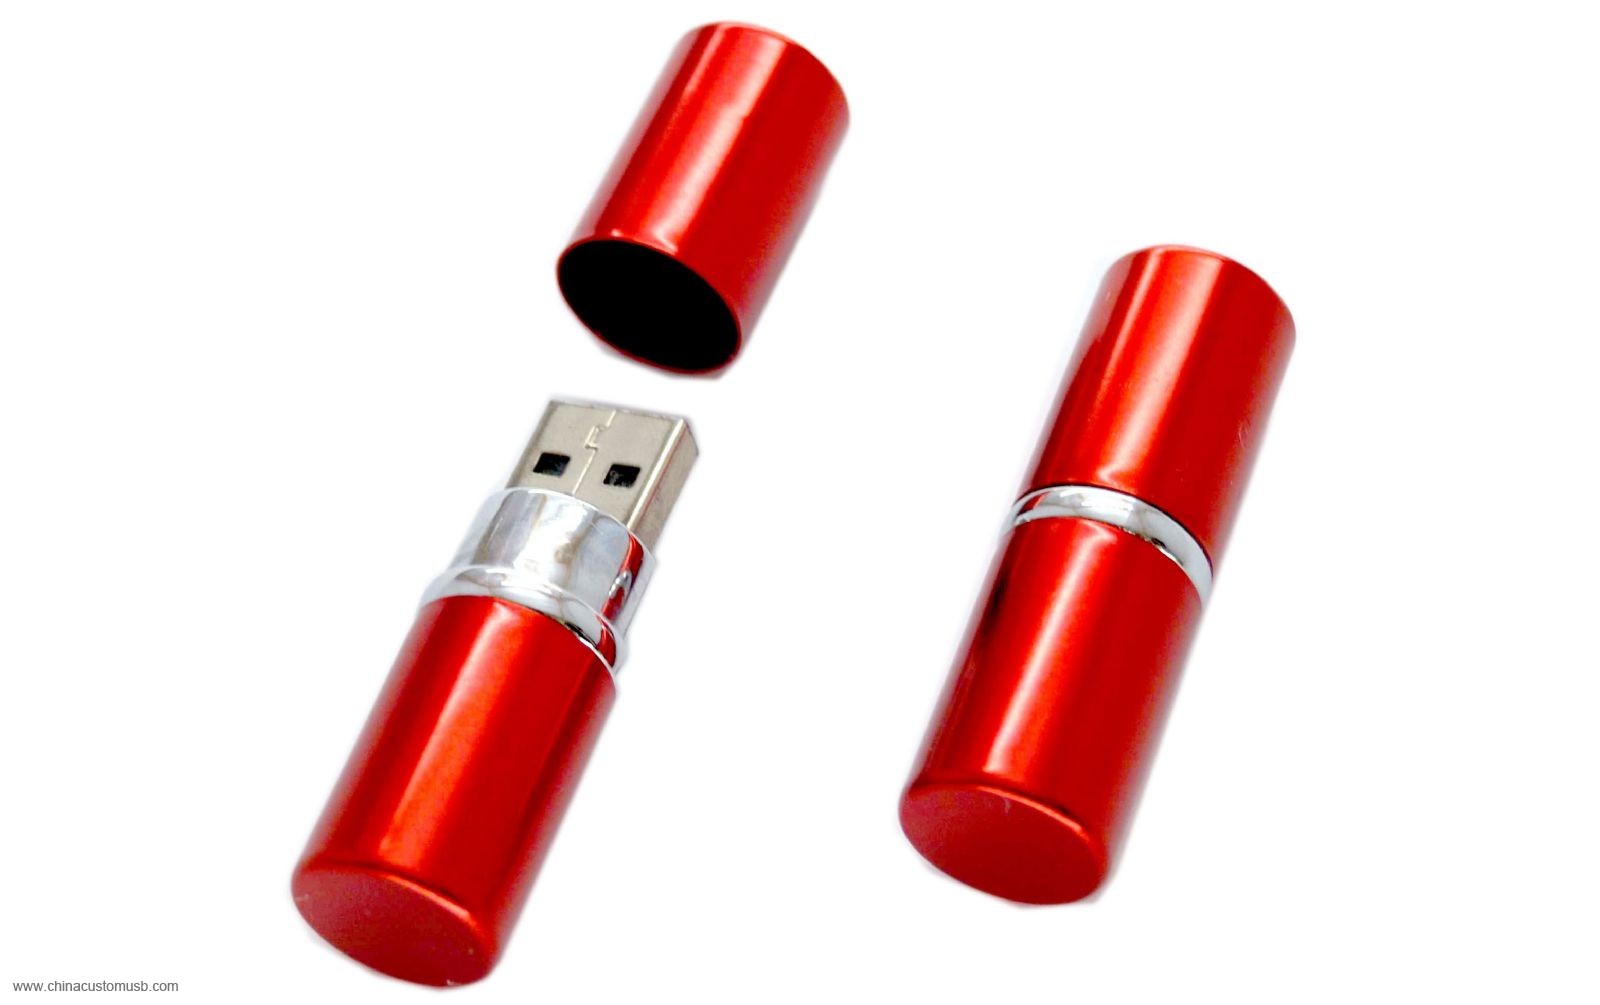  المعدن أحمر الشفاه USB فلاش محرك الأقراص 3 